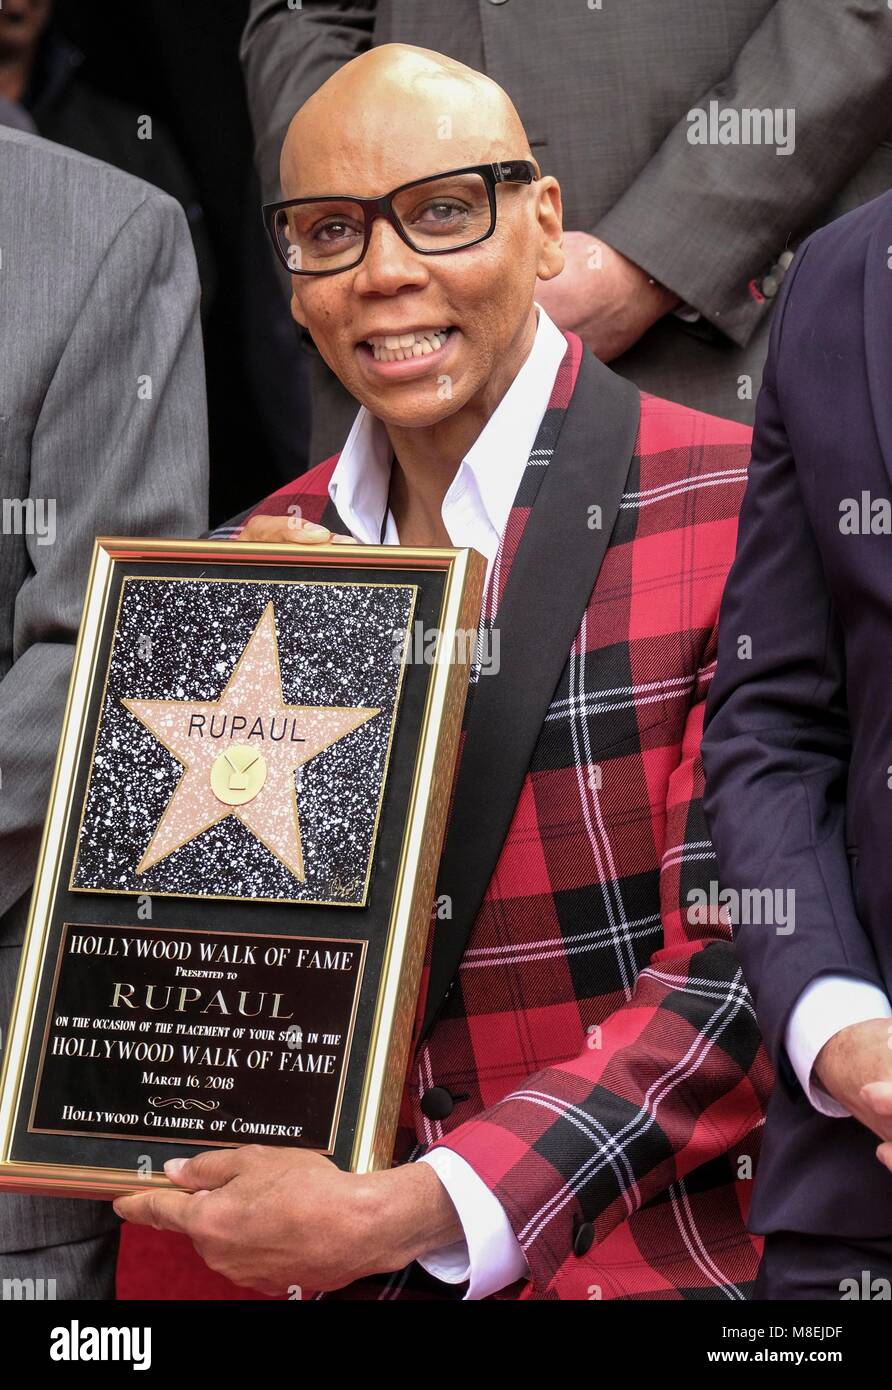 Los Angeles, Stati Uniti d'America. 16 Mar, 2018. RuPaul assiste una stella in onore di cerimonia sulla Hollywood Walk of Fame a Los Angeles, negli Stati Uniti, il 16 marzo 2018. Rupaul è stato premiato con una stella sulla Hollywood Walk of Fame il venerdì. Credito: Zhao Hanrong/Xinhua/Alamy Live News Foto Stock